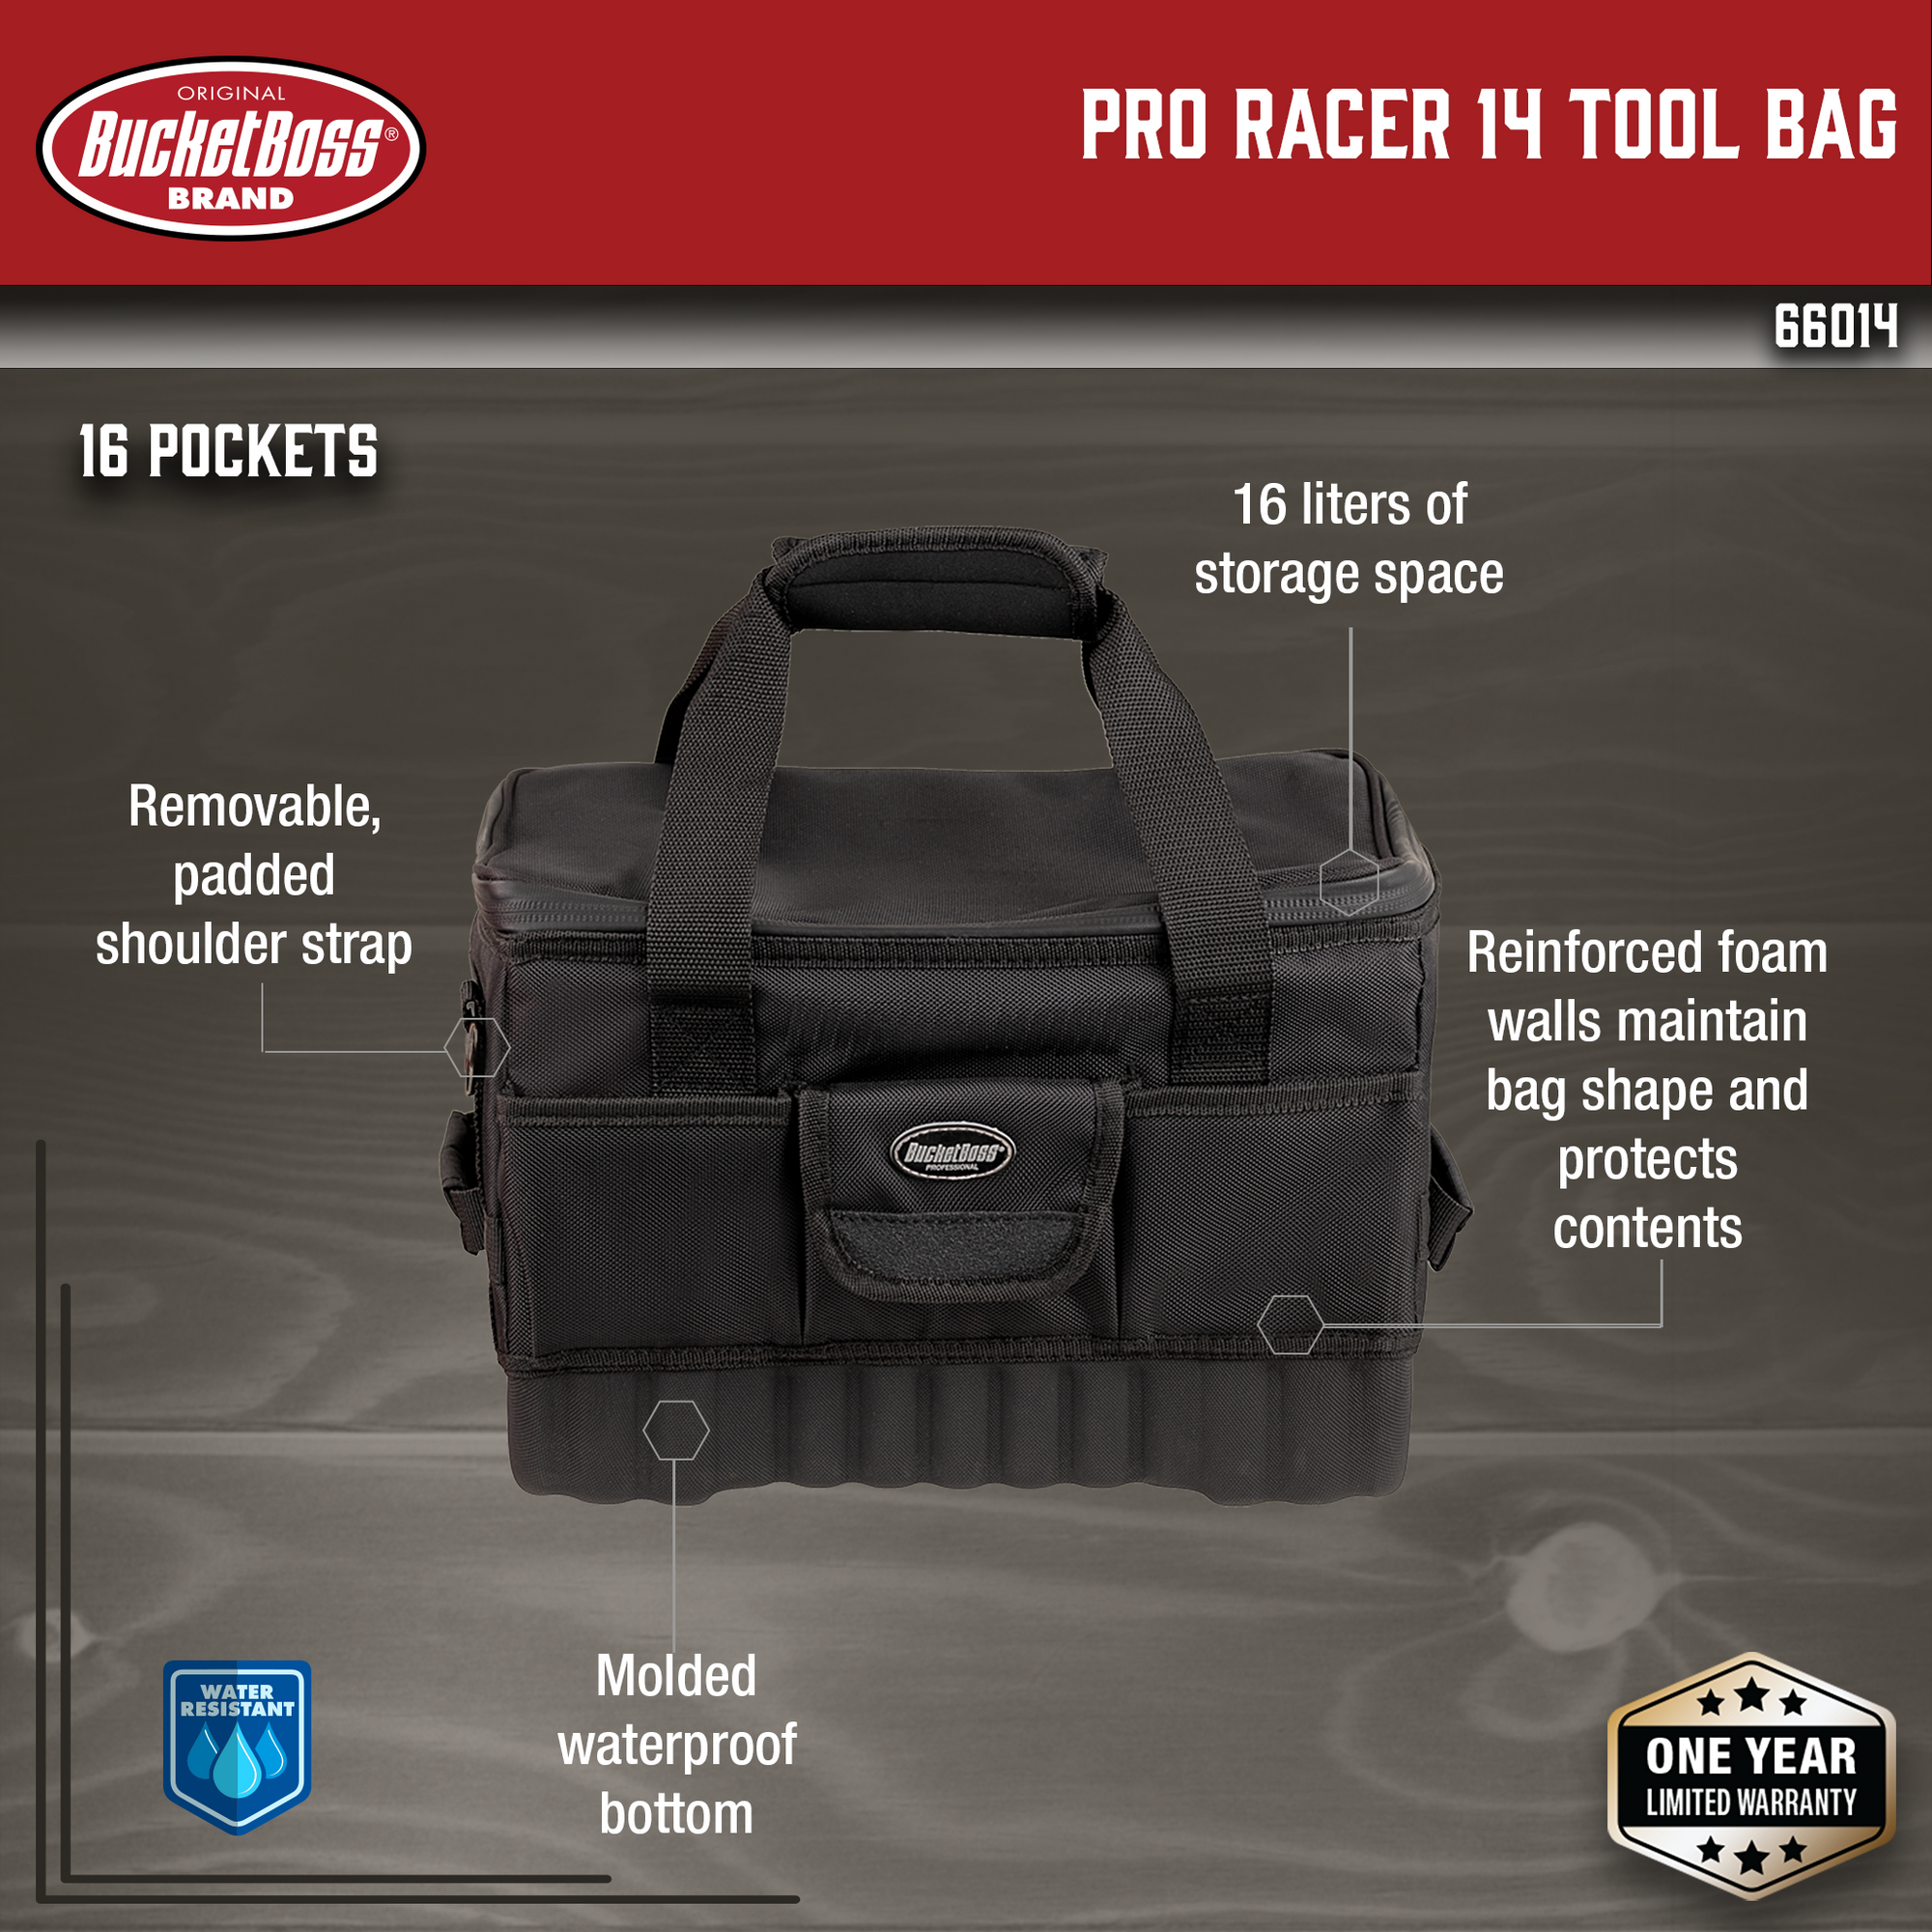 Pro Racer 14 Tool Bag